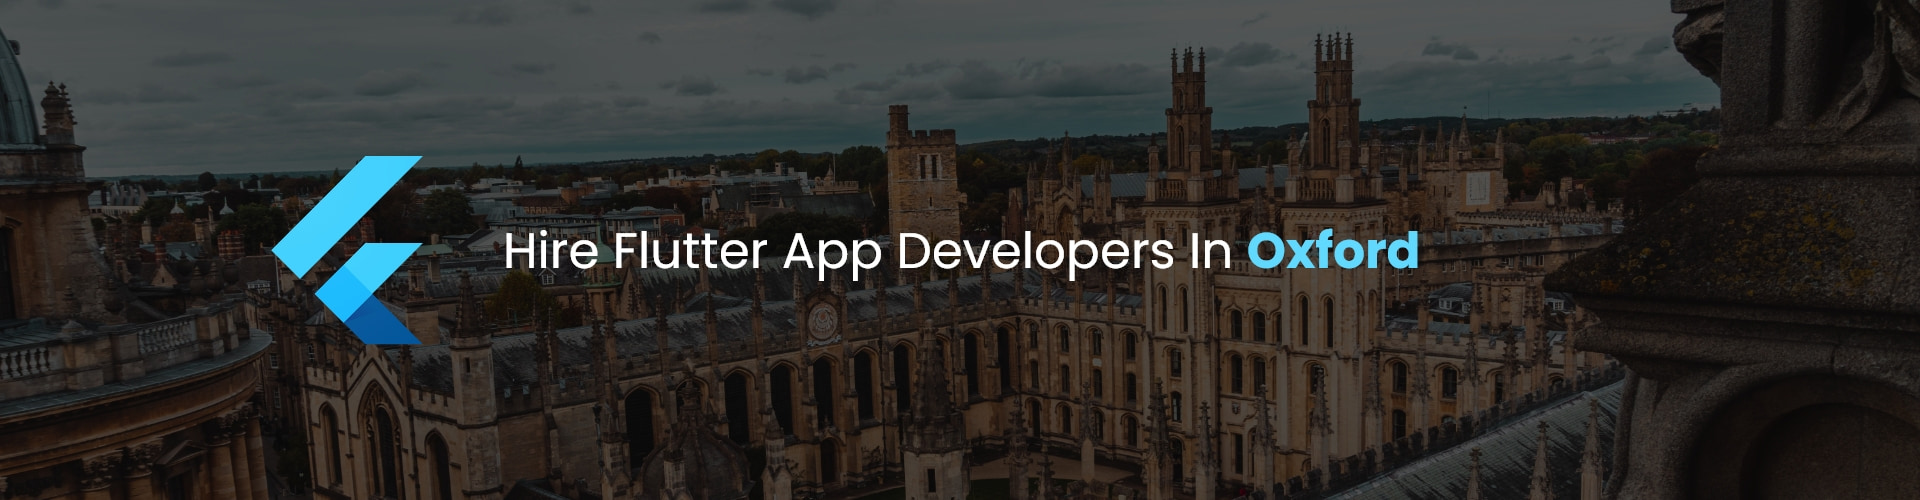 hire flutter app developers in oxford